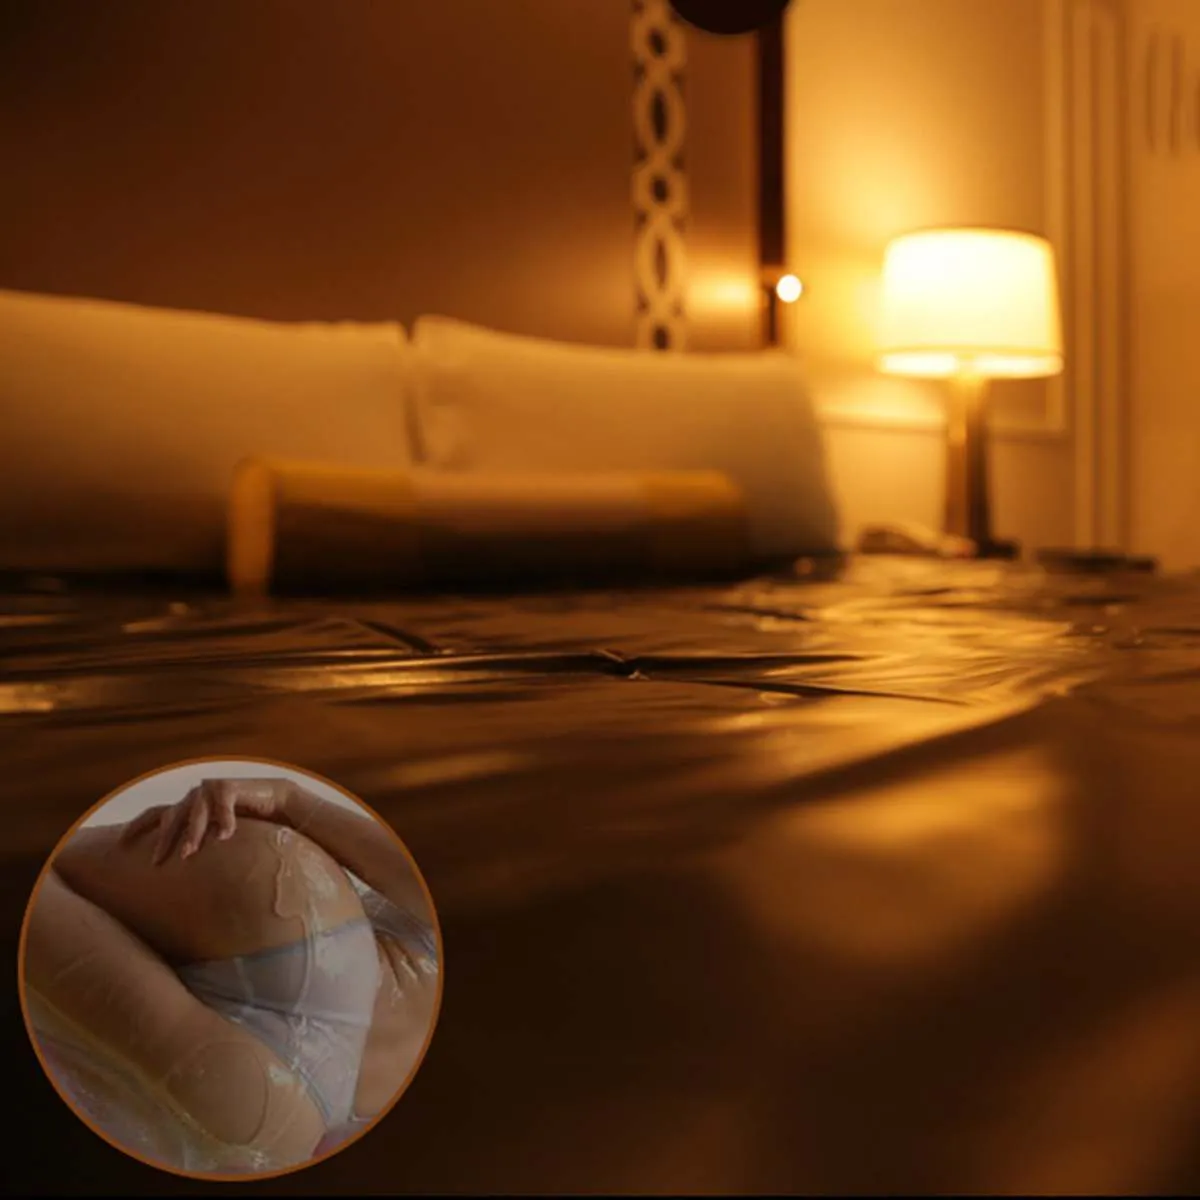 Feuilles de lit pour adultes étanches sexe pvc en vinyle Couverture allergique Relief Bed Pung Hypoallergène Sexe Game-literie Fiches de litière 2011131701522